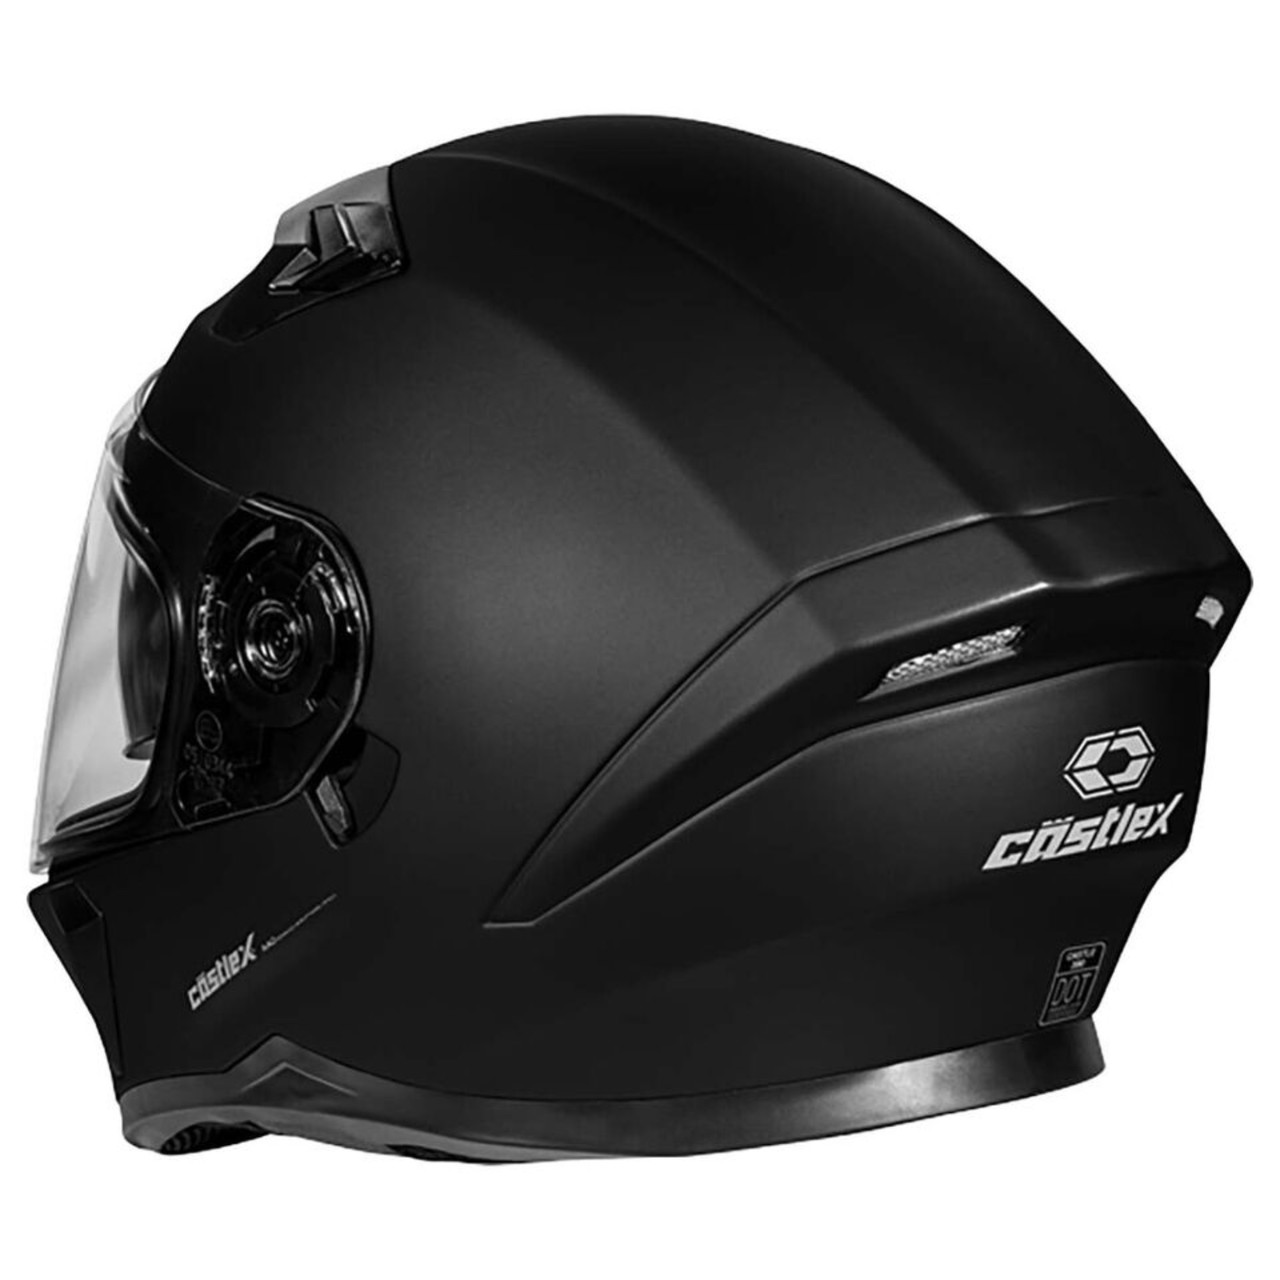 Castle X New 2X-Large Matte Black CX390 Snowmobile Helmet, 36-14079